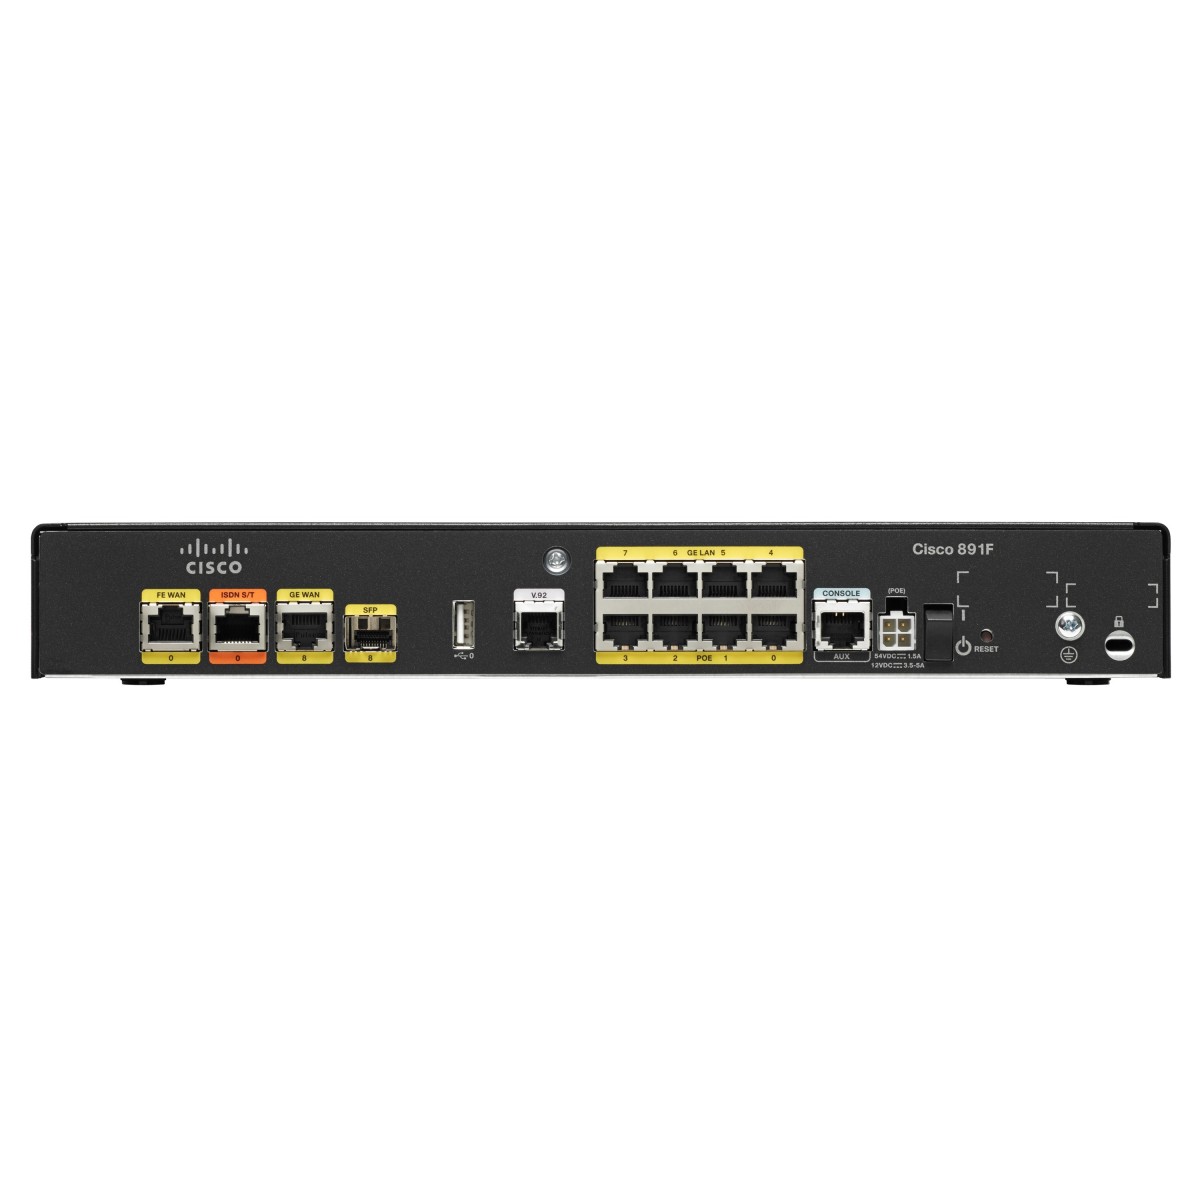 Cisco ISR891F-K9 Integrated Services Router - Ethernet WAN - Gigabit Ethernet - Black - Grey